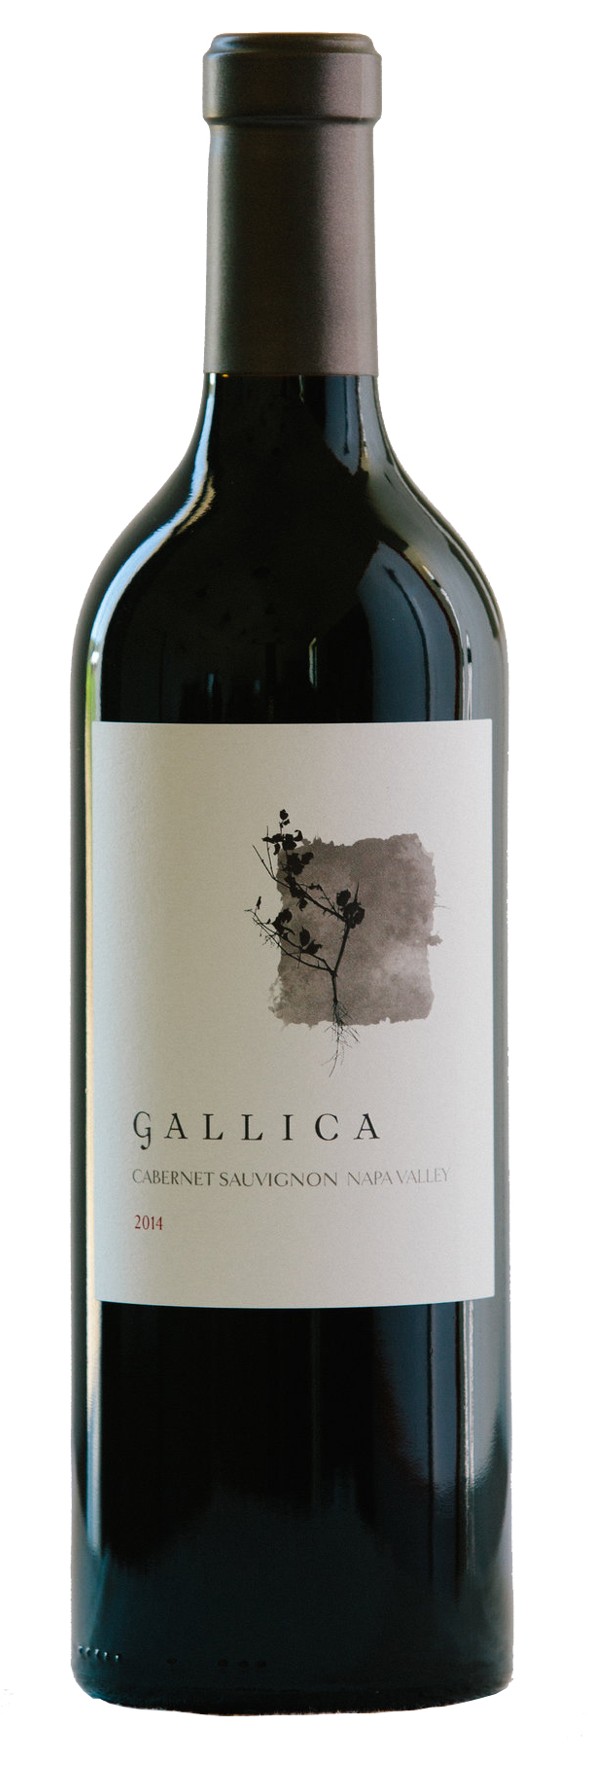 A wine by Gallica